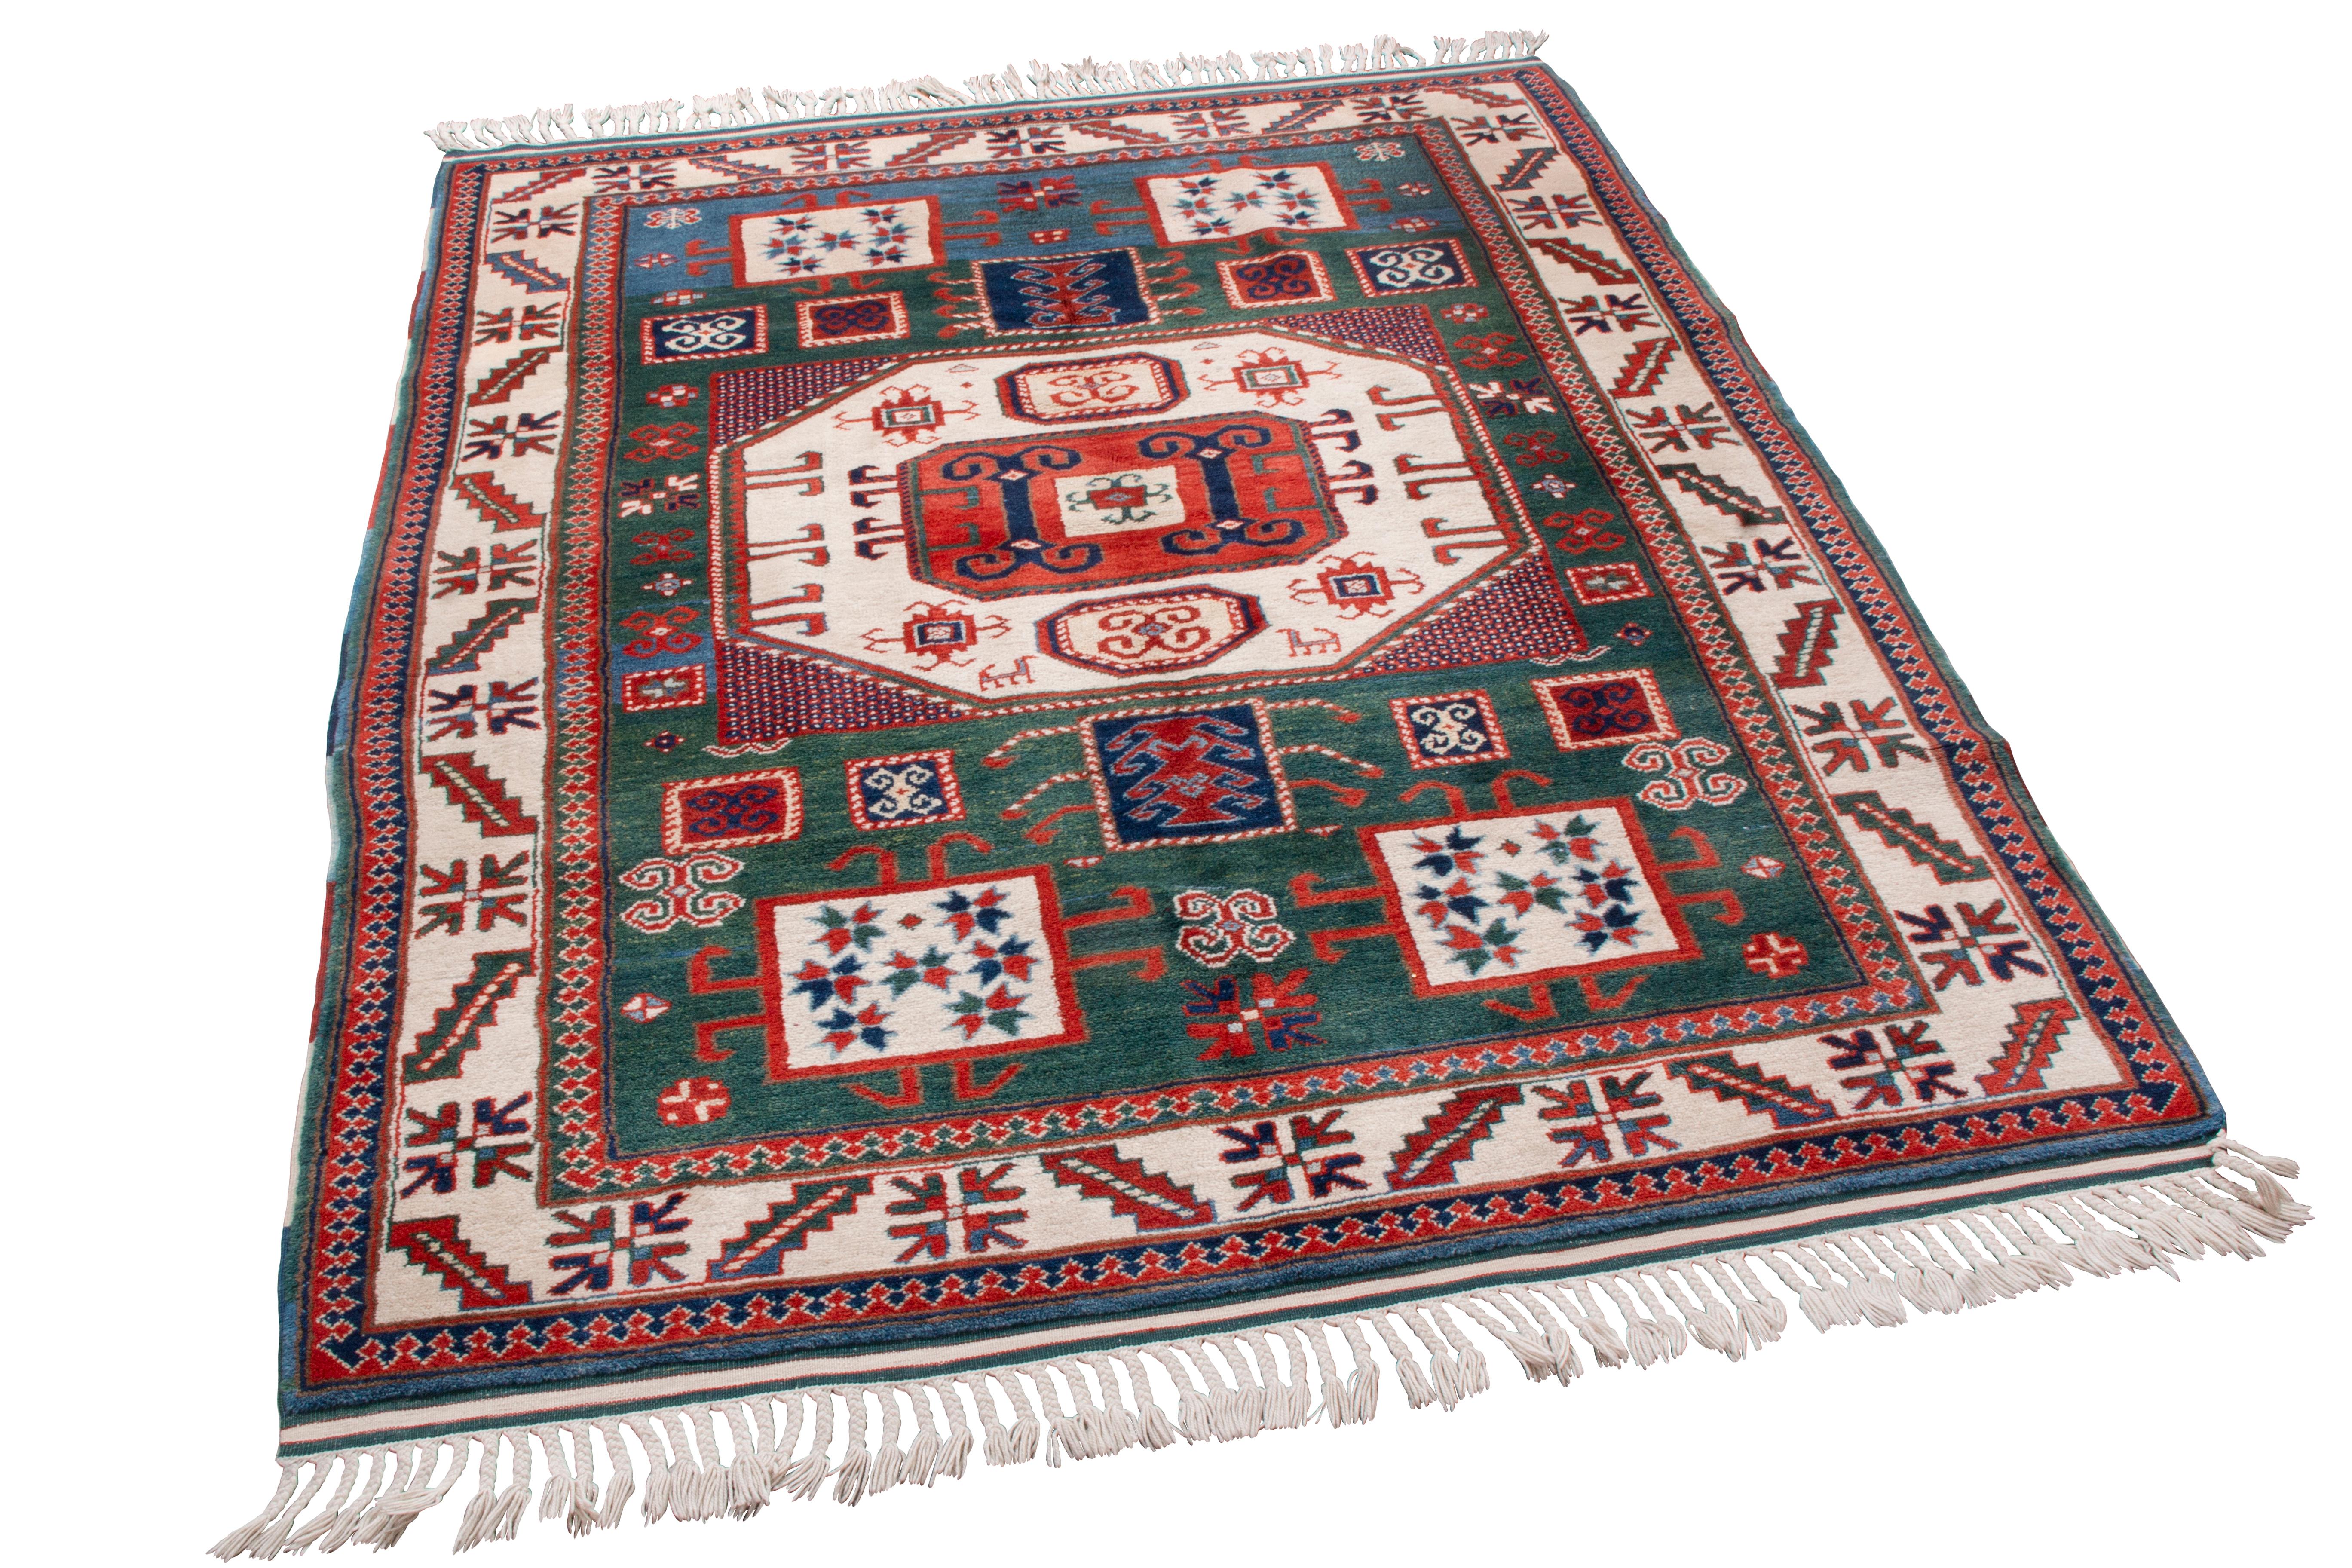 Originaire de Turquie, ce nouveau tapis de transition en laine Kazak arbore d'abondants symboles de cornes de bélier turcs tout au long du motif. Symboles traditionnels de force et de résilience, il est rare d'en voir plus de quelques-uns, et encore